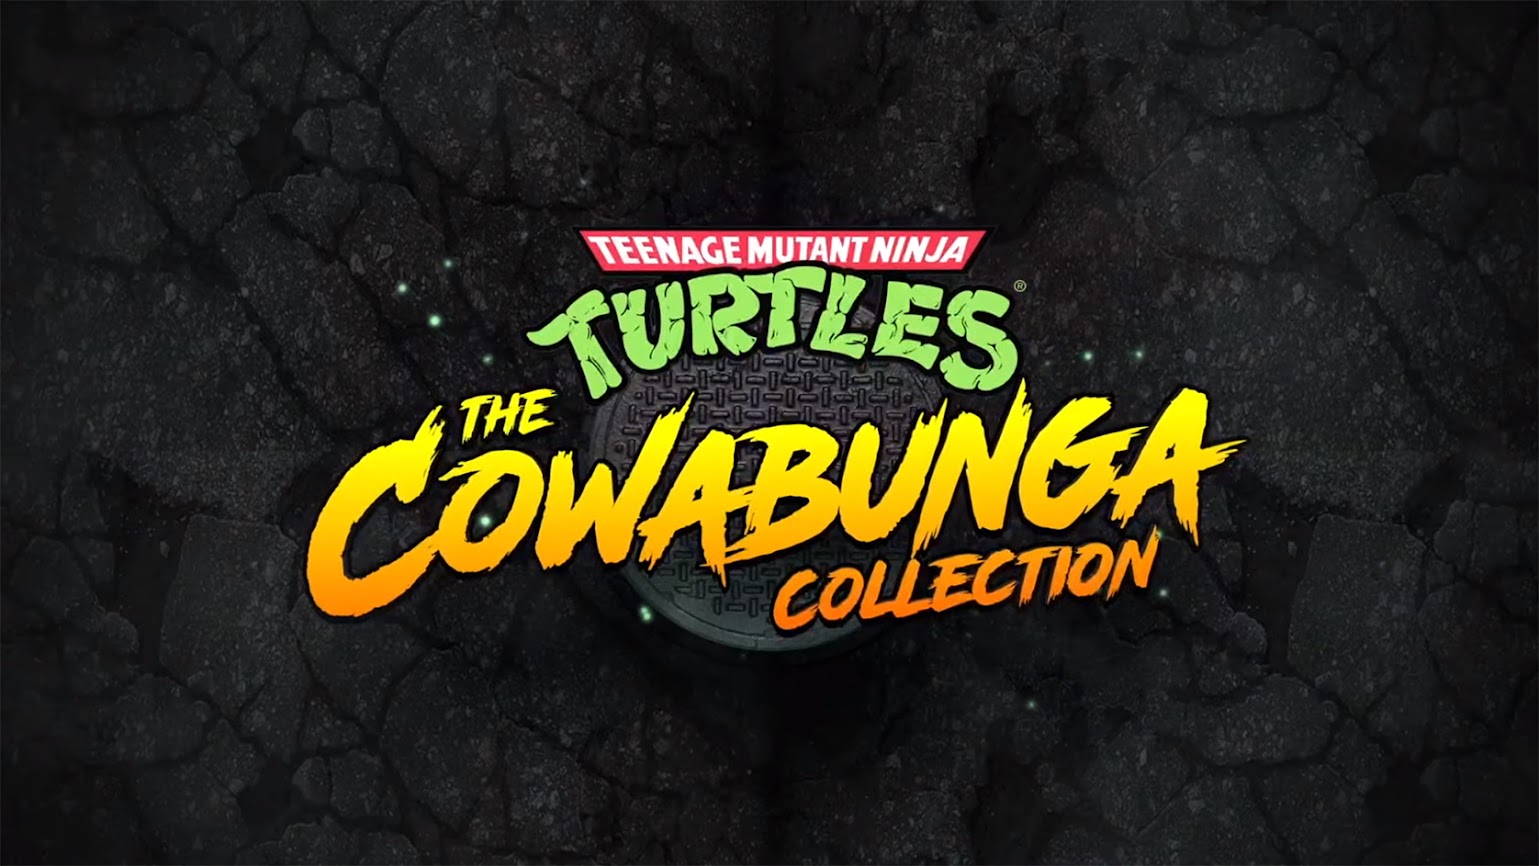 Teenage Mutant Ninja Turtles: The Cowabunga Collection Revealed